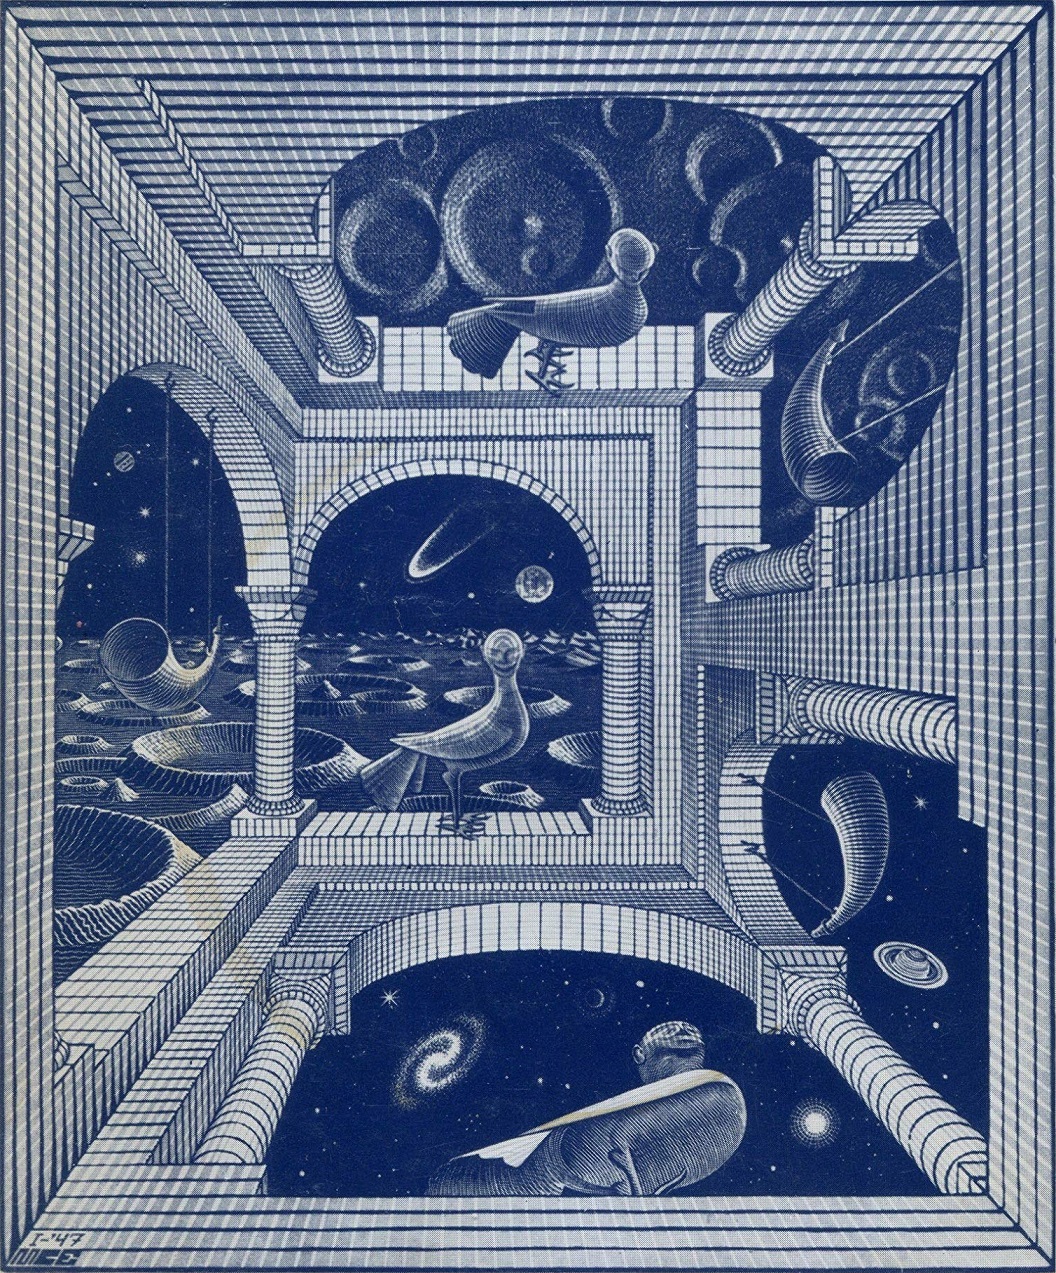 Title page of  “Le cosmicomiche”, Calvino, (1° ed., Einaudi 1965)